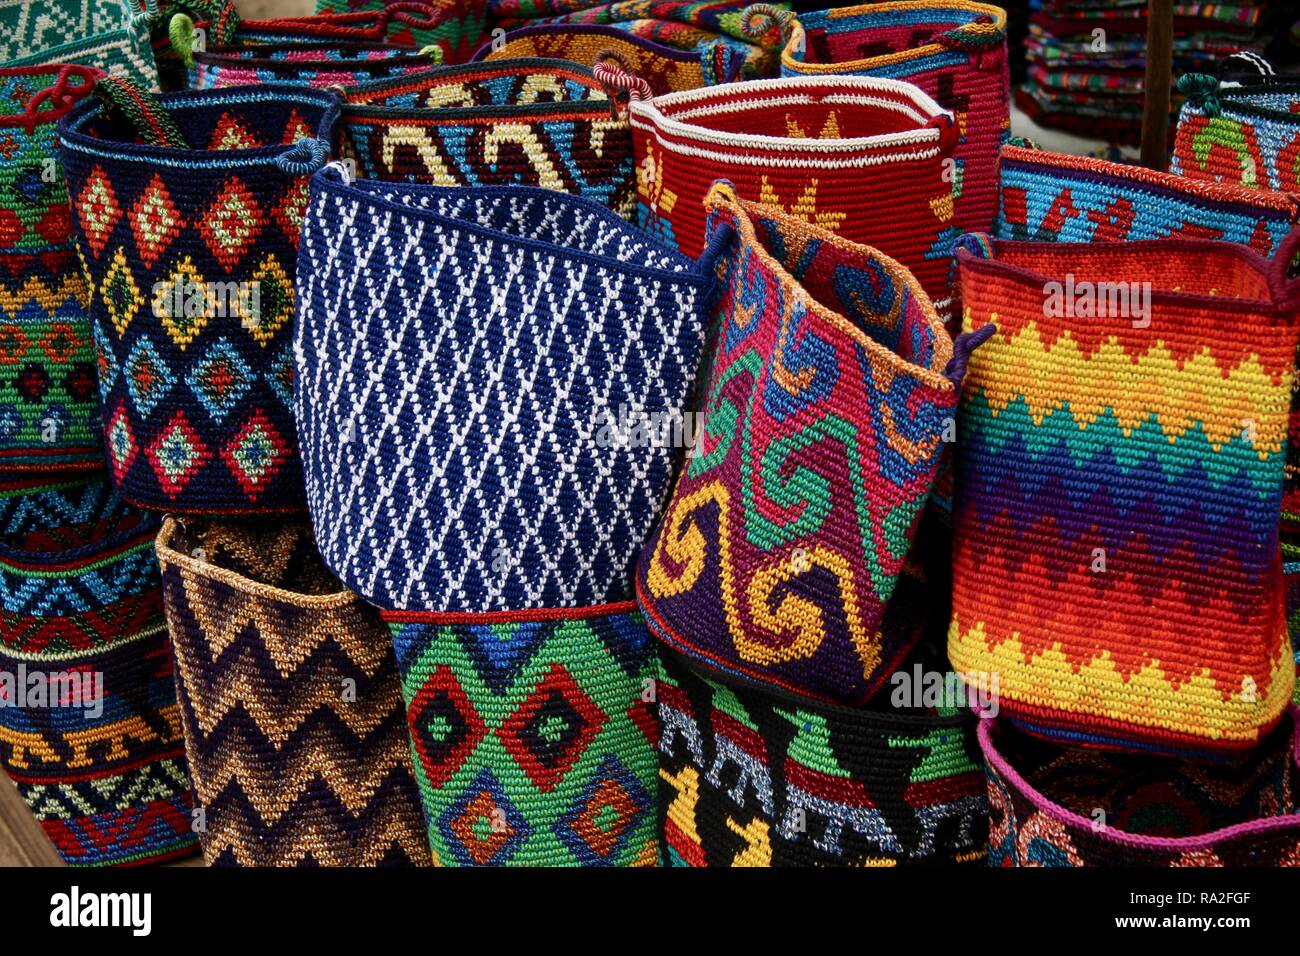 Lebendige, farbenfrohe Handgemachte Taschen in einer Vielzahl von Mustern  in einer zentralen amerikanischen Markt Stockfotografie - Alamy